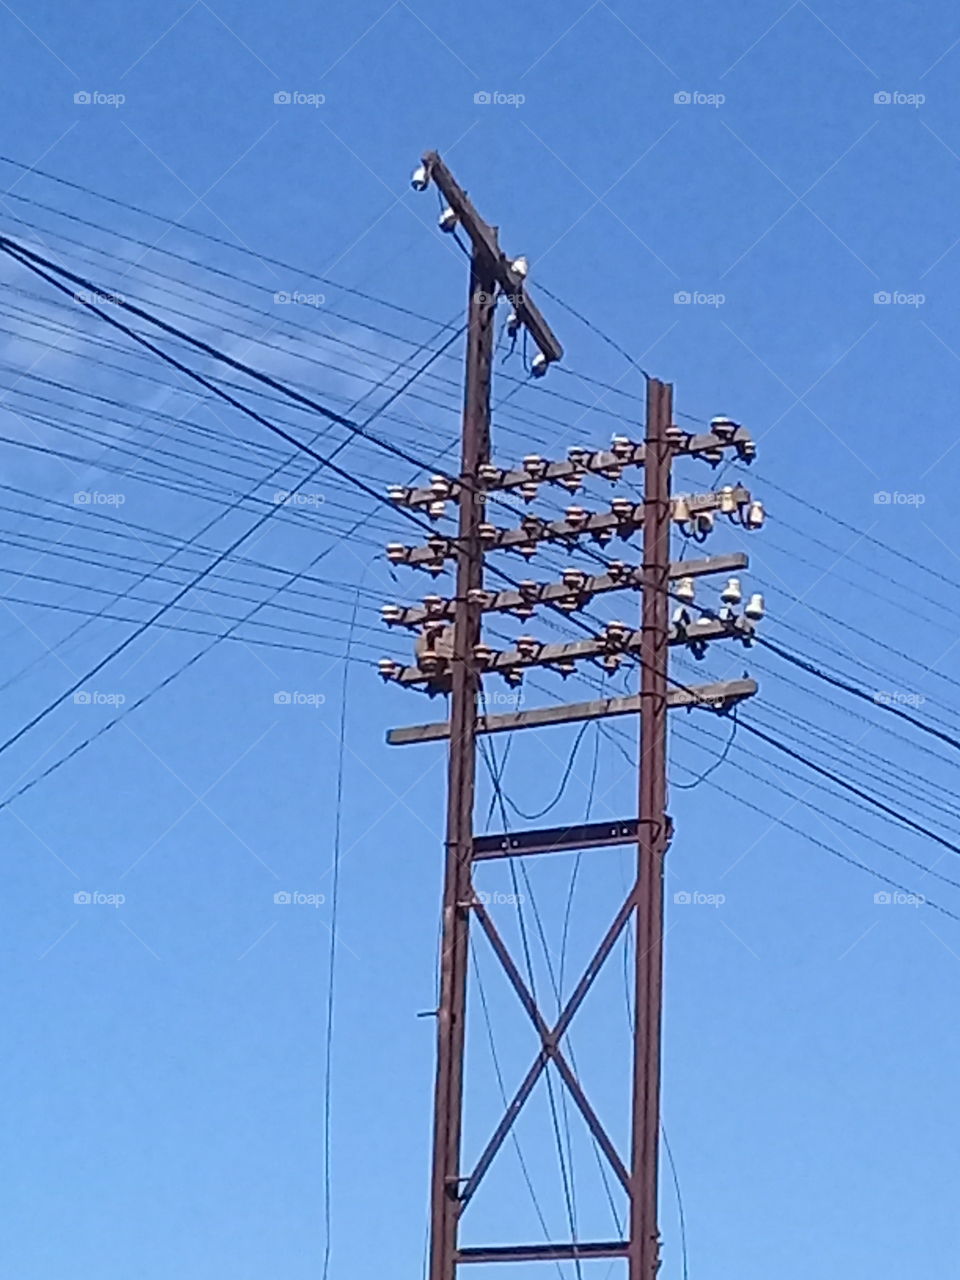 torre de electricidad con múltiples cables en varias direcciones en representación de las diversas formas de comunicación.